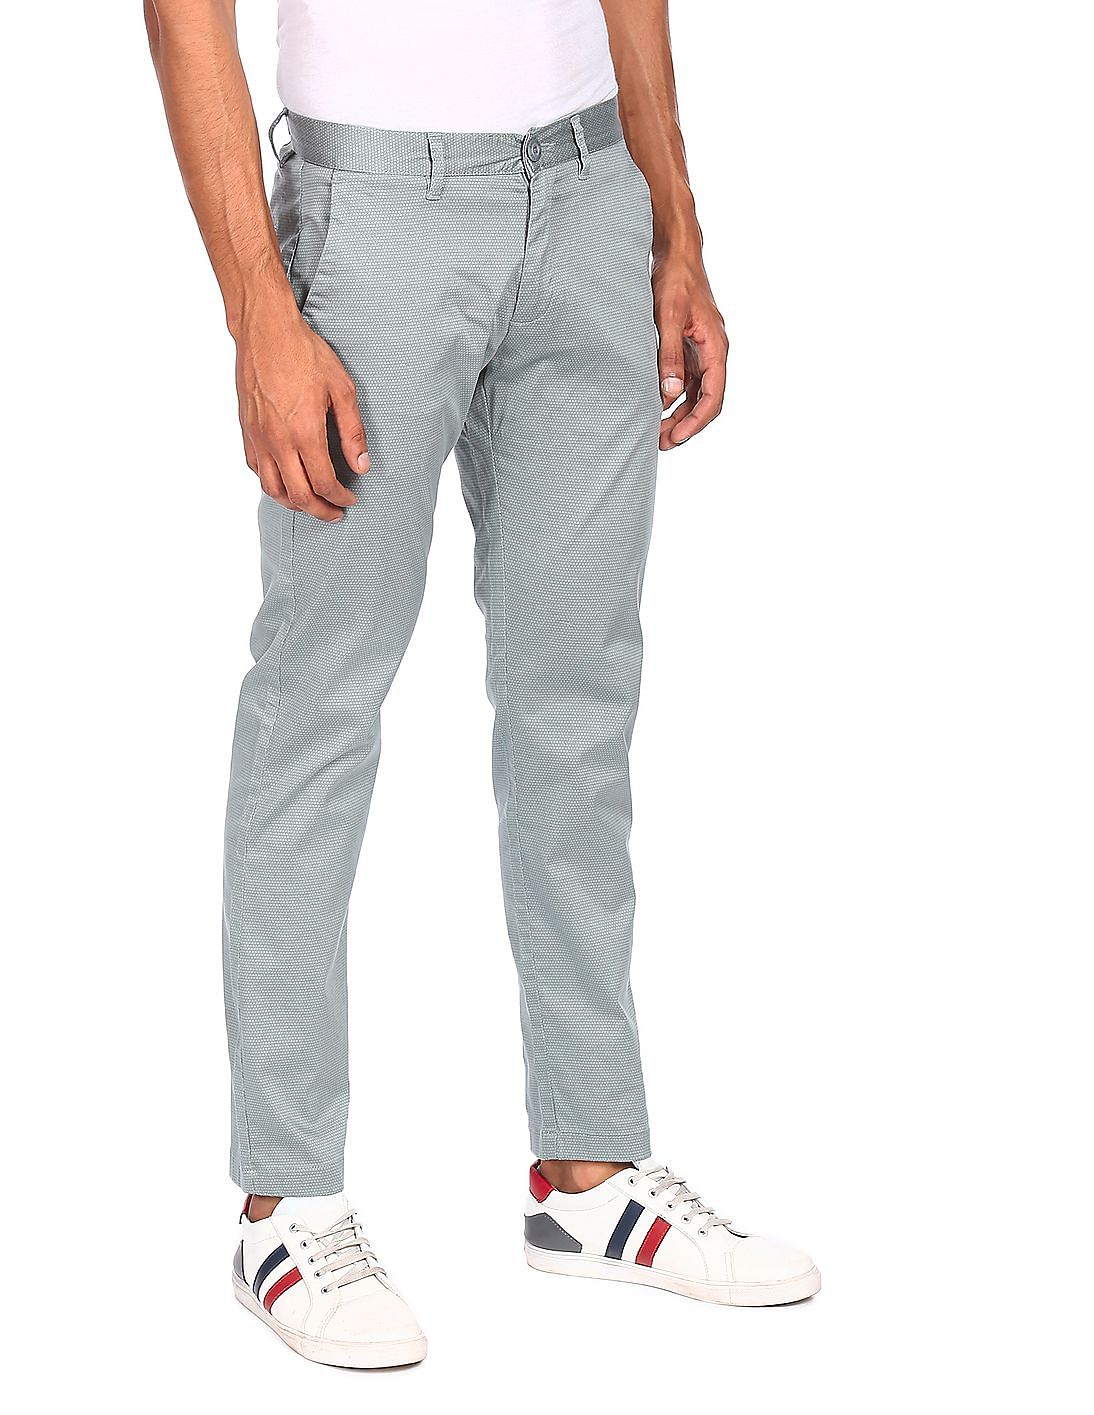 Buy Ruggers Mens Slim Fit Casual Trousers  280076068Ecru30IN33Ecru30 at Amazonin